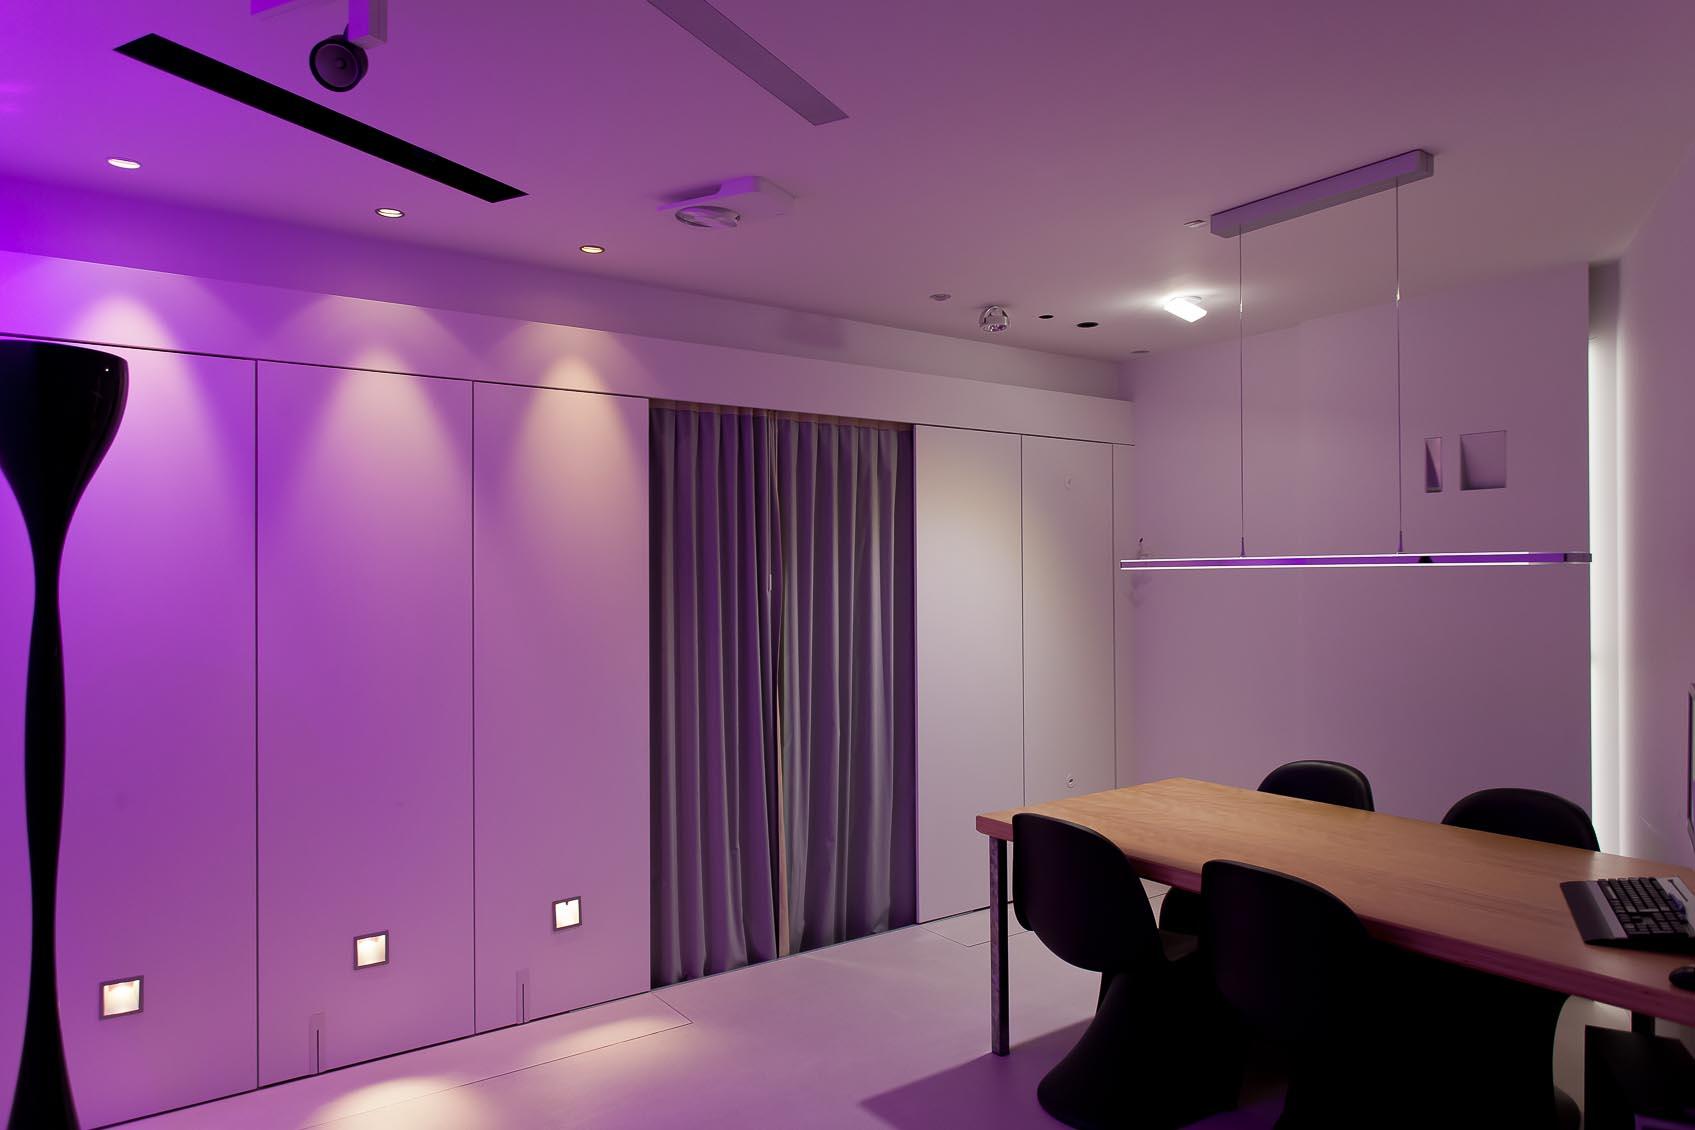 Beleef interieurverlichting in onze design lichtstudio7